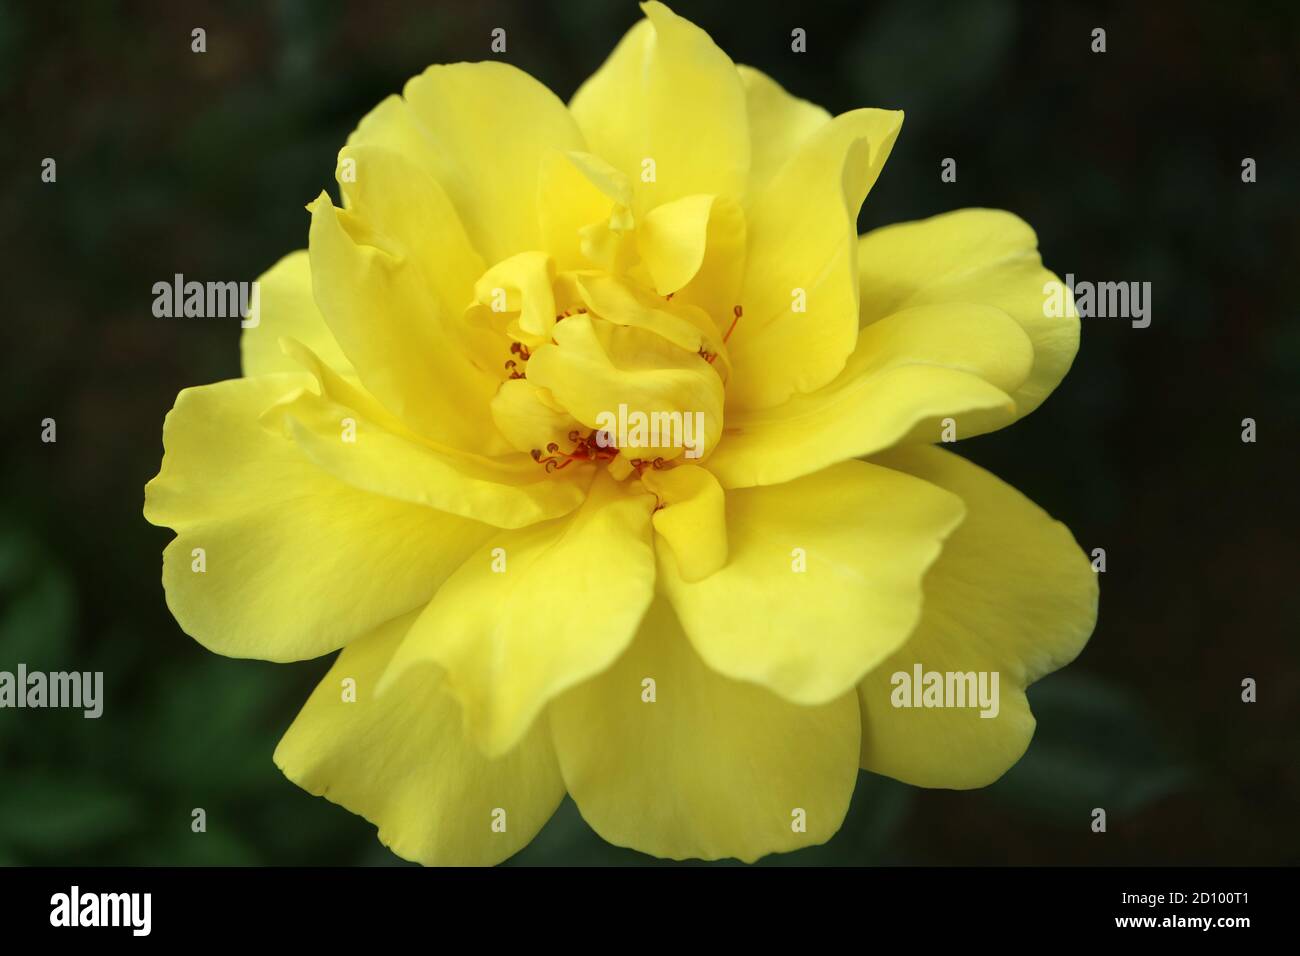 Rose jaune avec des pétales délicats et des feuilles vertes, rose jaune dans le jardin, fleur de printemps, beauté dans la nature, rose jaune macro, image de stock Banque D'Images